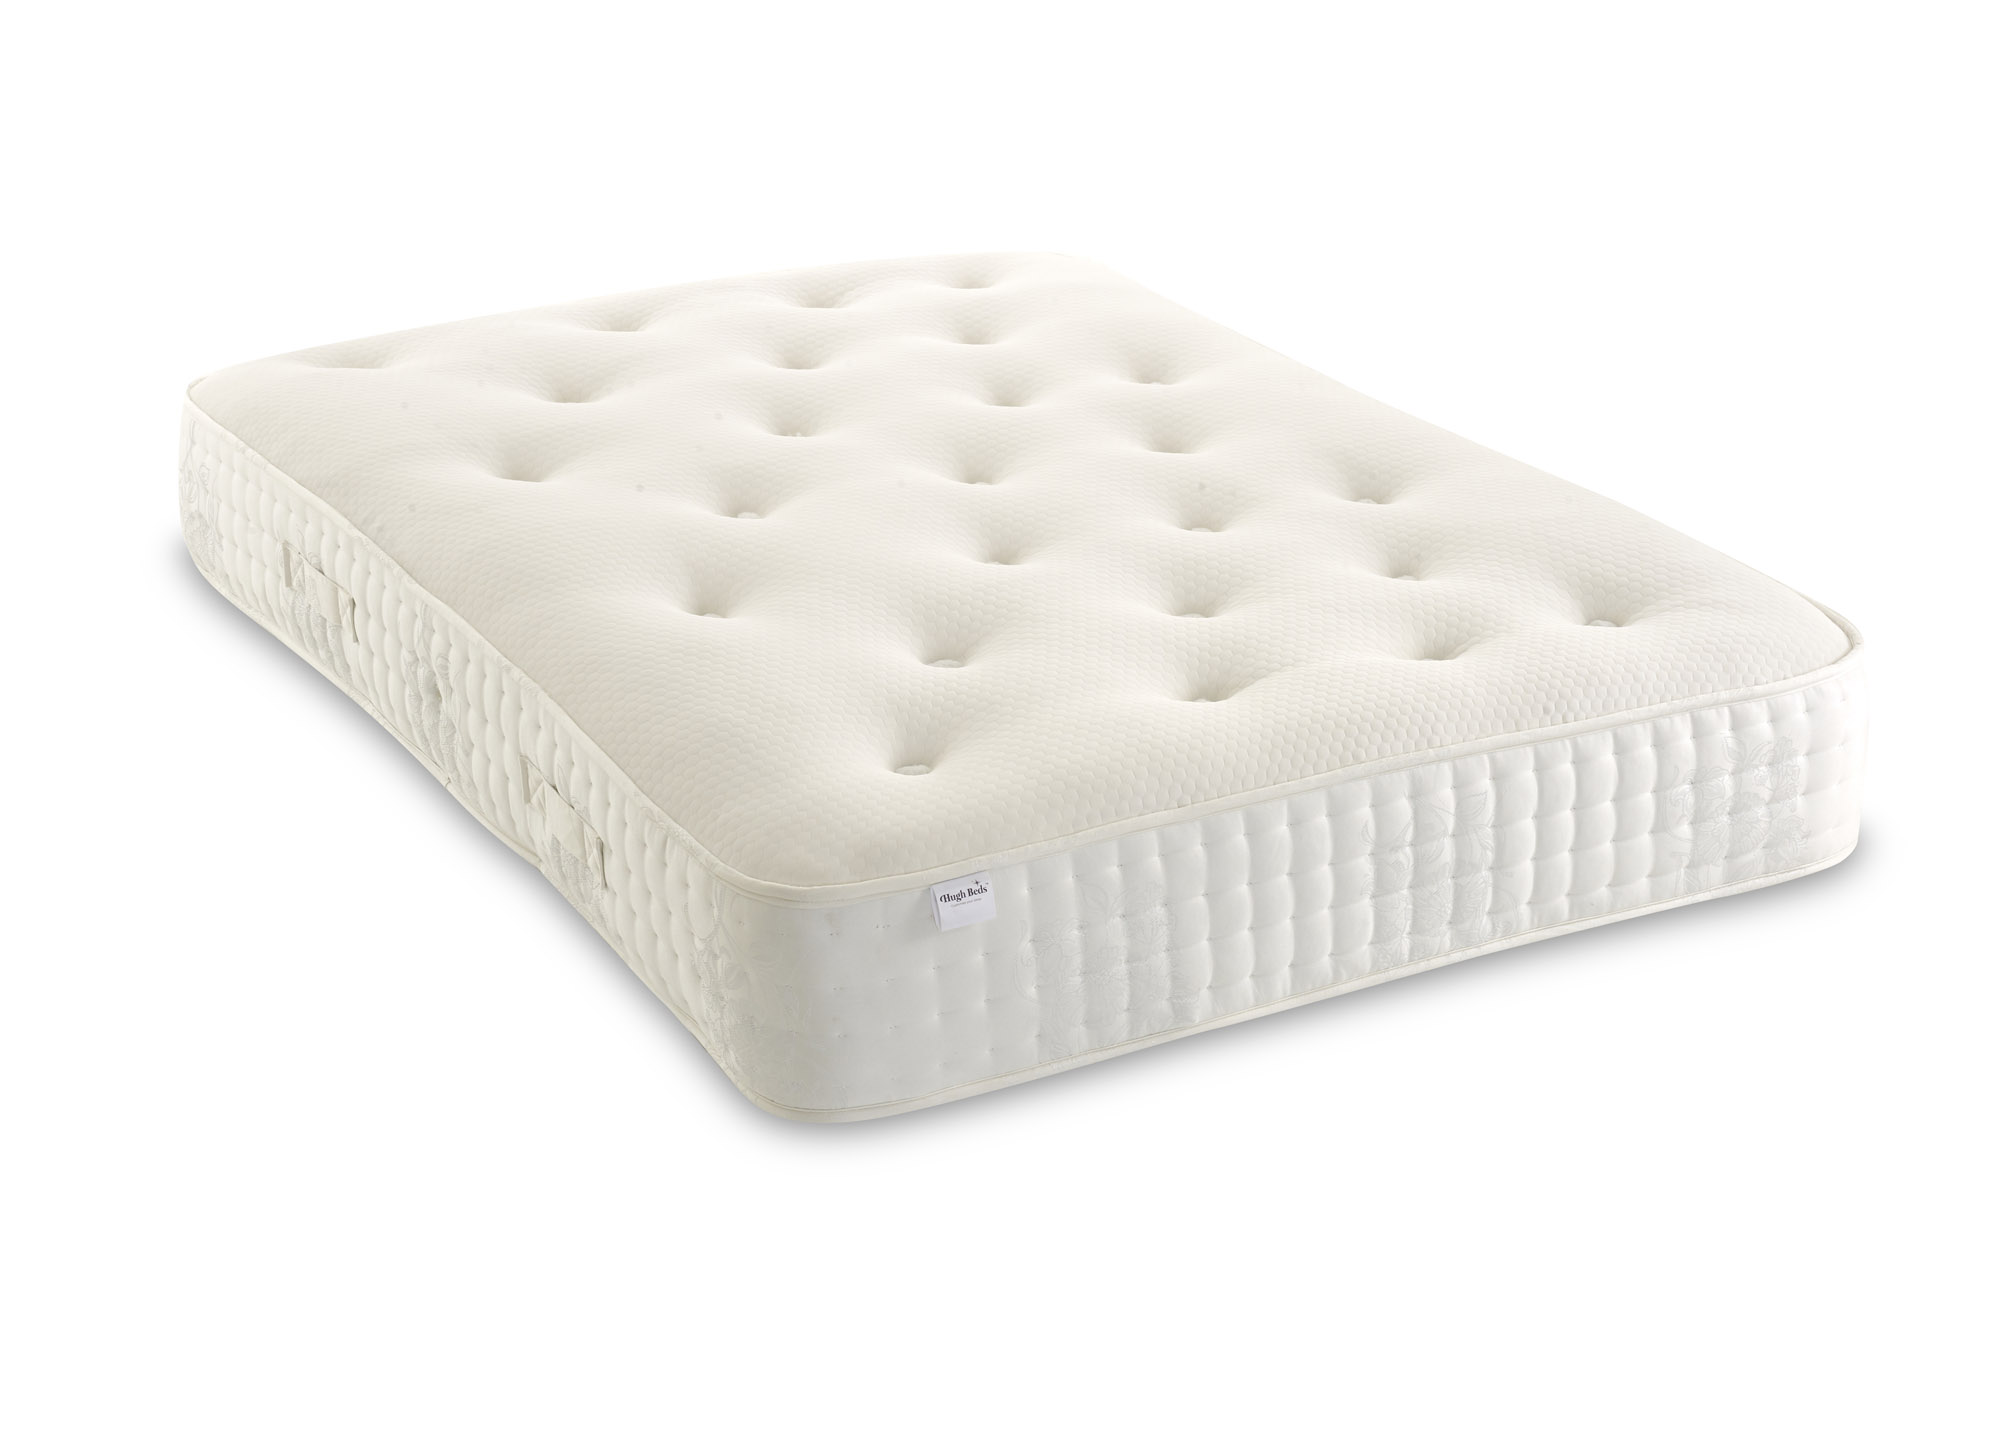 37.5 mattress